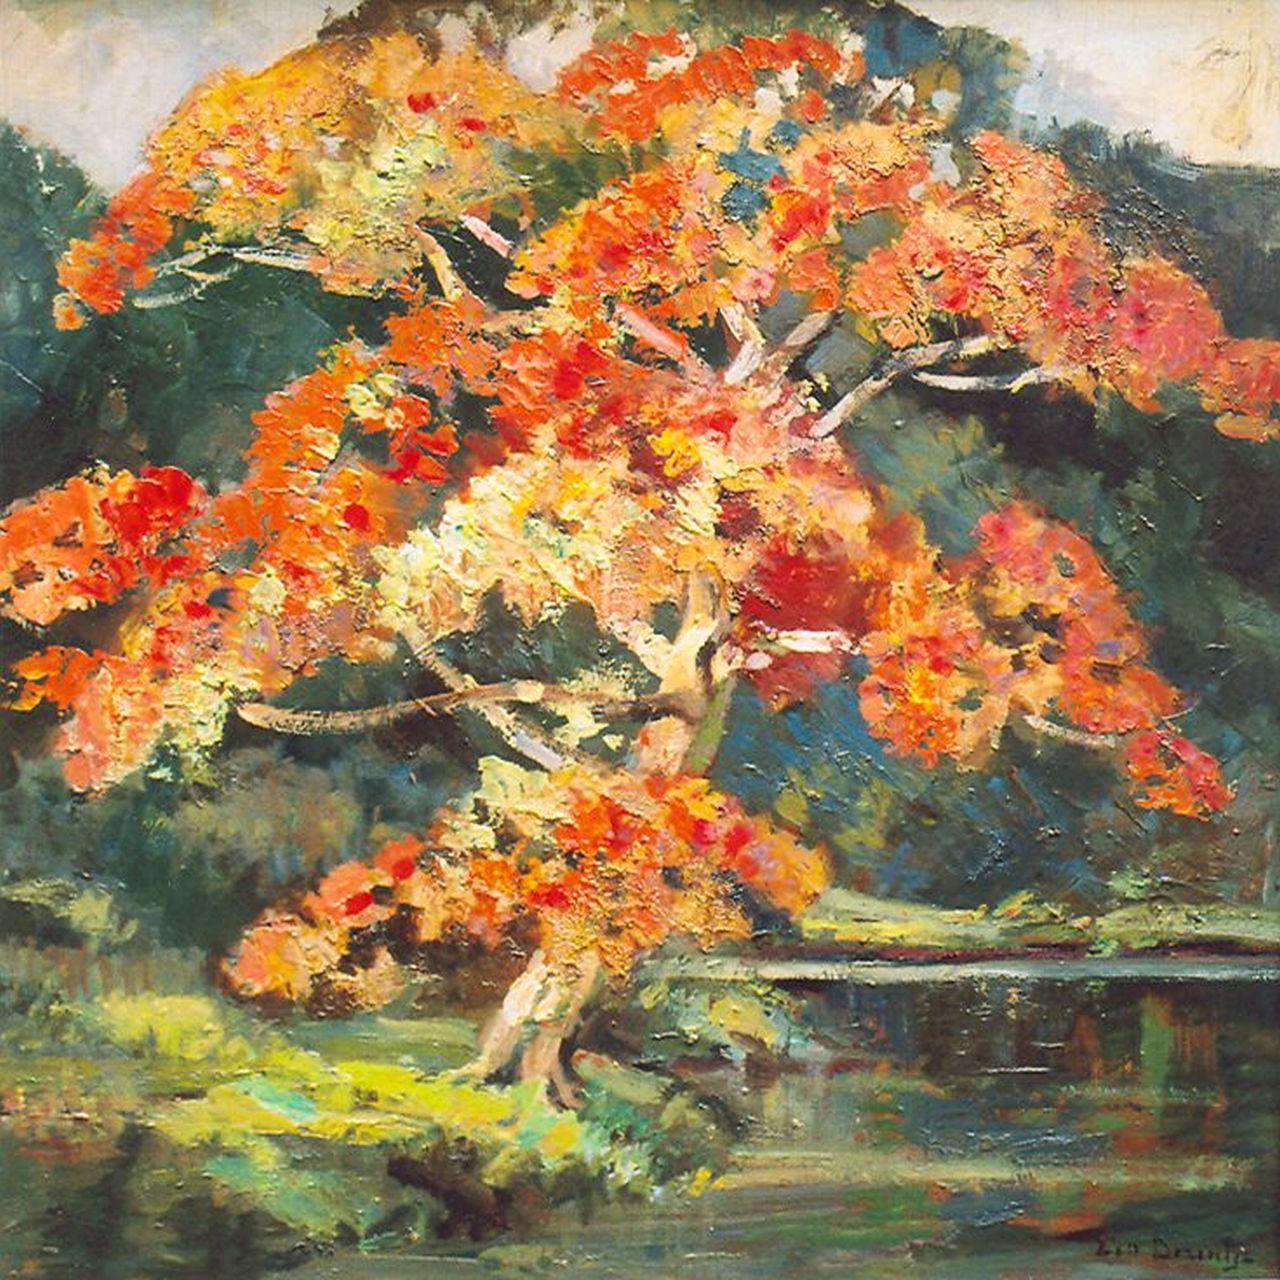 Dezentjé E.  | Ernest Dezentjé, Flowering tree, Öl auf Holz 48,1 x 47,9 cm, signed l.r.